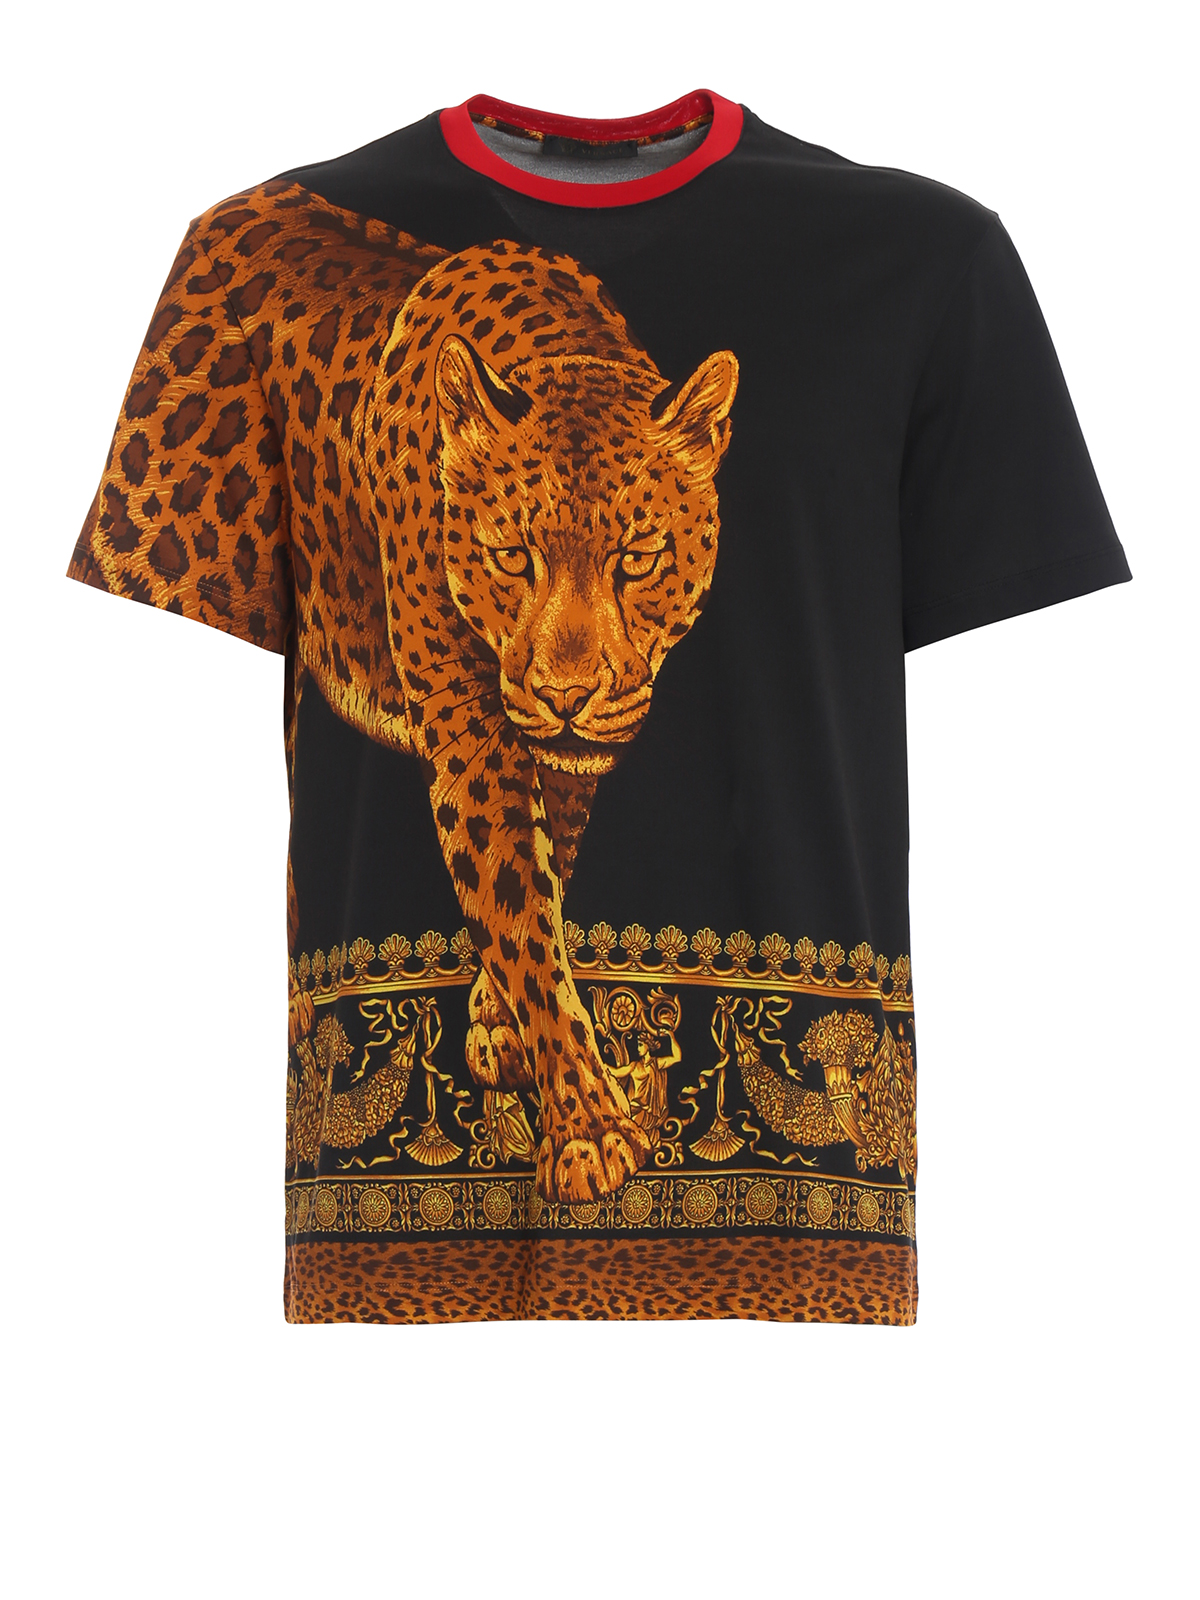 versace leopard shirt